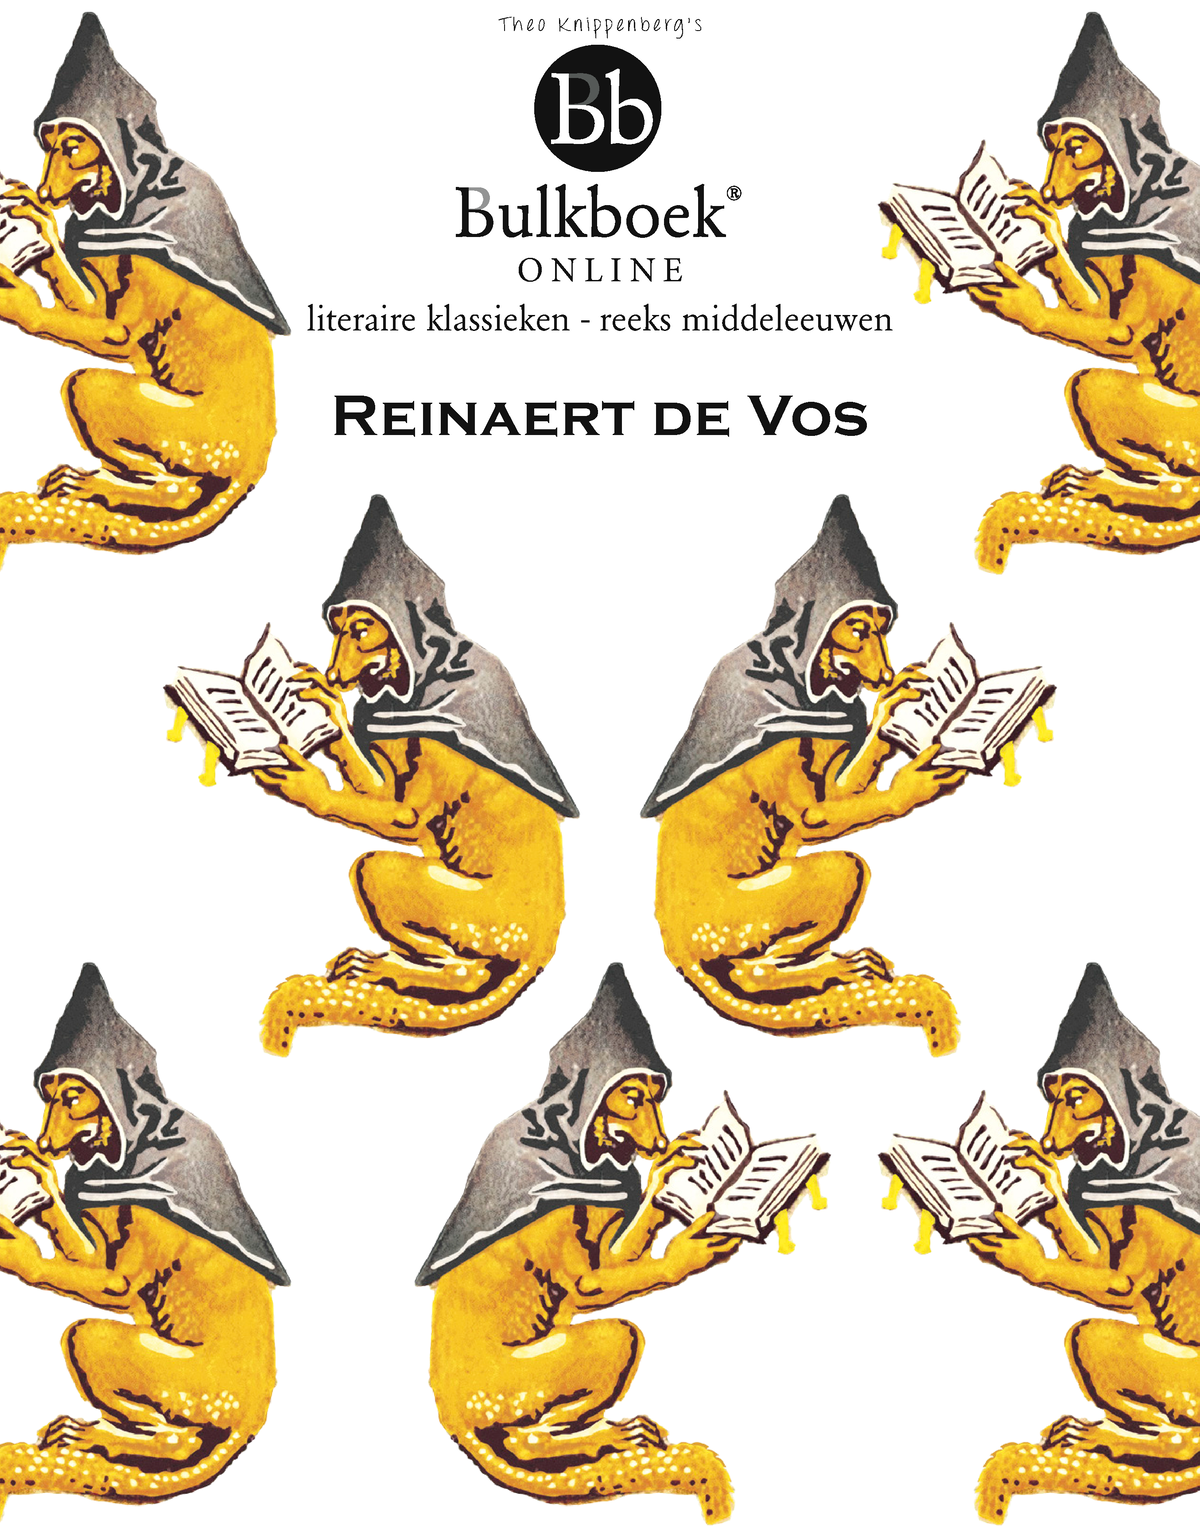 Bulkboek Reinaert de Vos - O N L I N E literaire klassieken - reeks middeleeuwen Reinaert de Vos T h foto